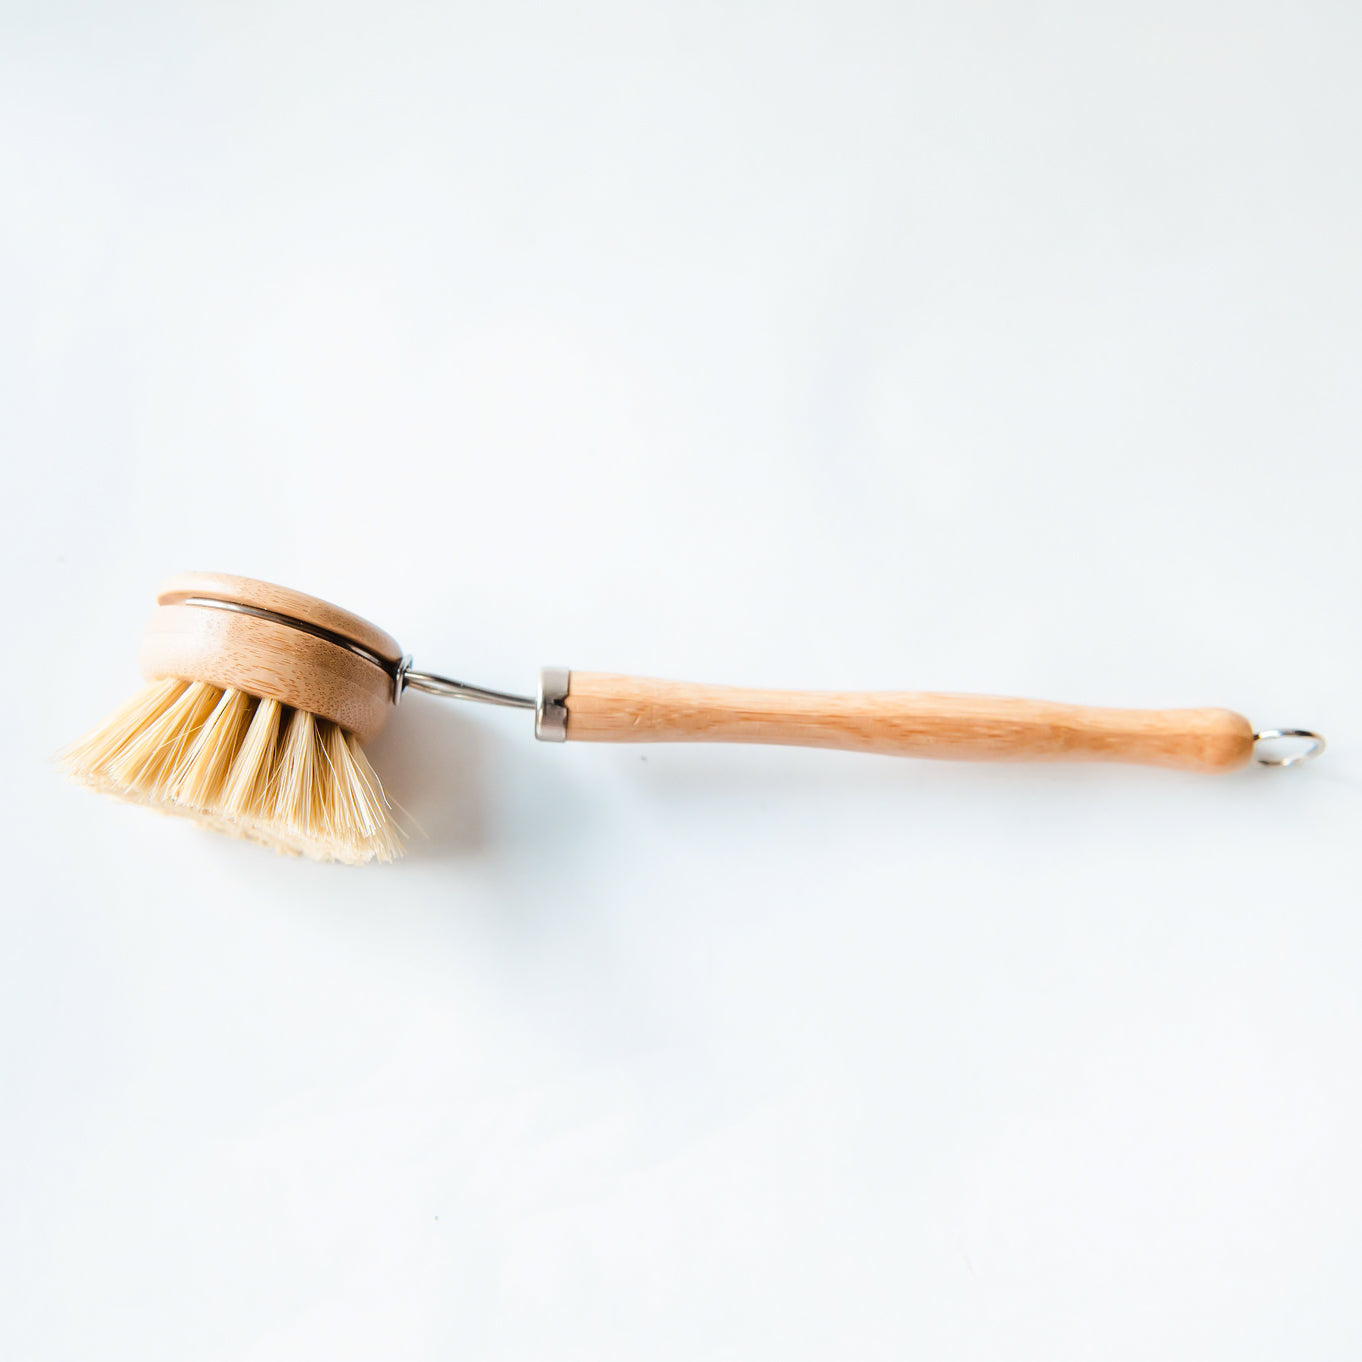 Wooden Pot Dish Washing Brush Bamboo Scruber Tableware Washing Cleaning  Kitchen Supplies Home Sink Dishwashing Gadgets Tools